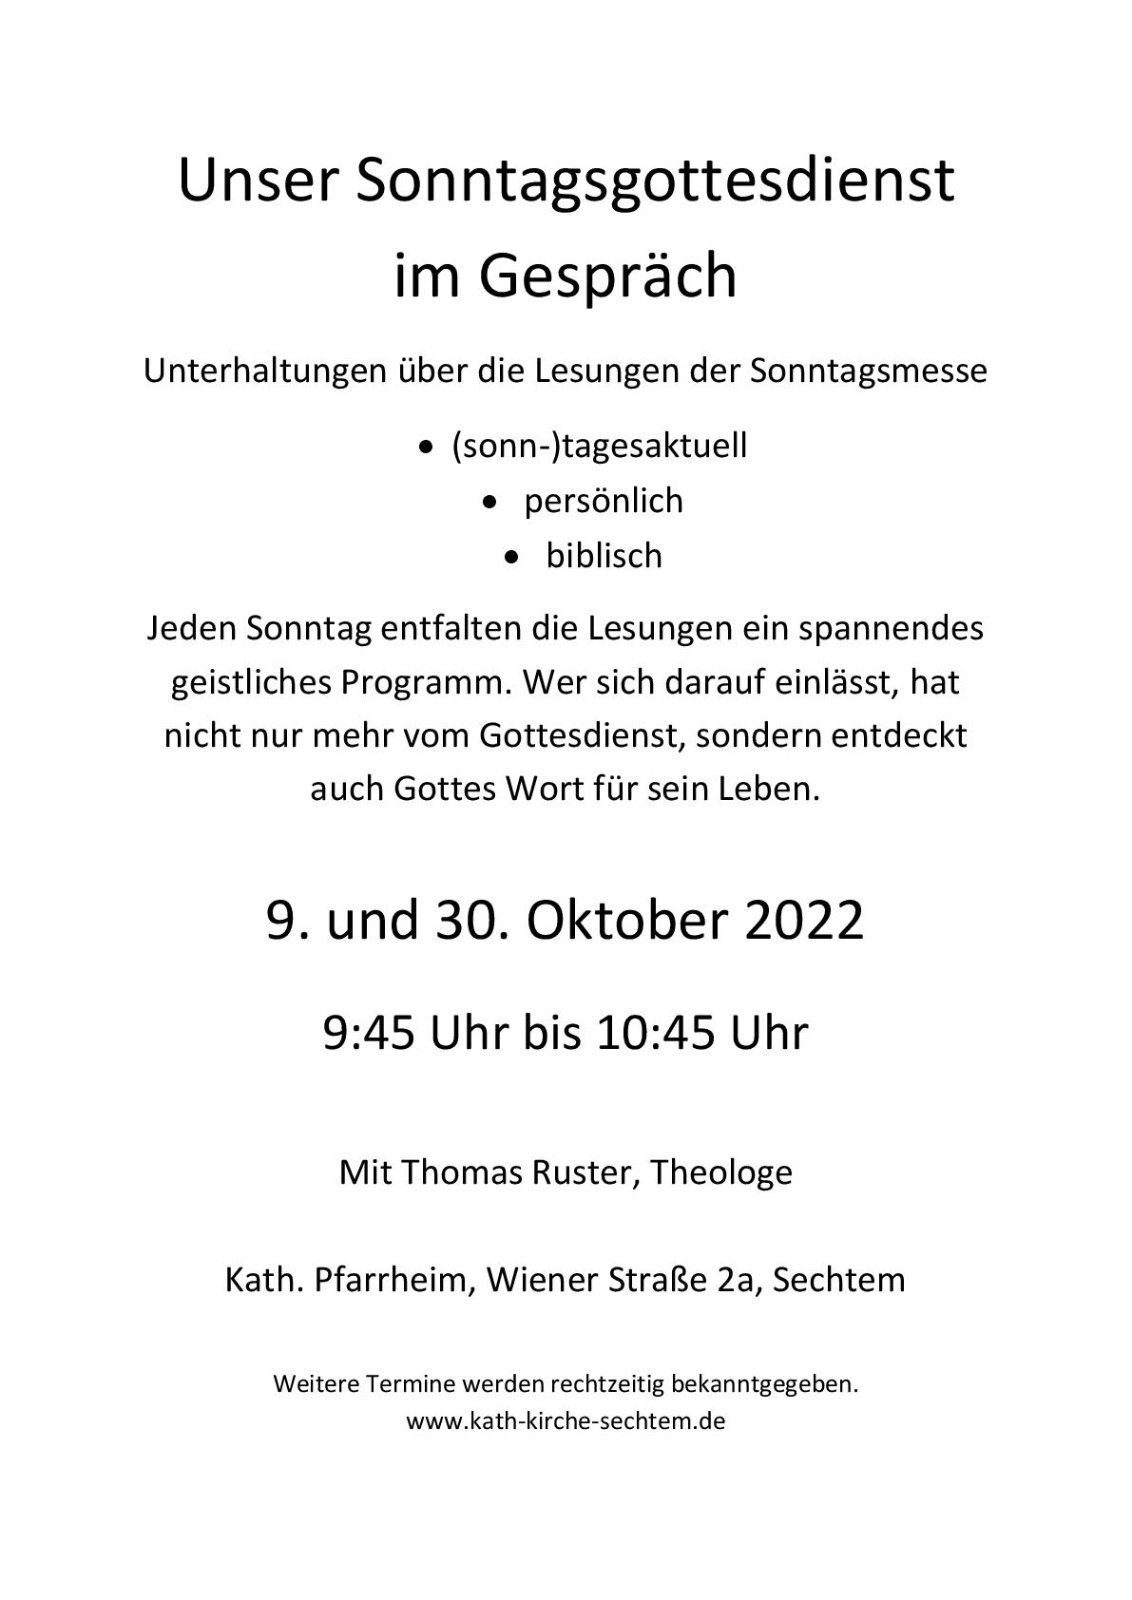 Plakat Gottesdienst im Gespräch 2022 Oktober-001 (c) Elke Kluitmann